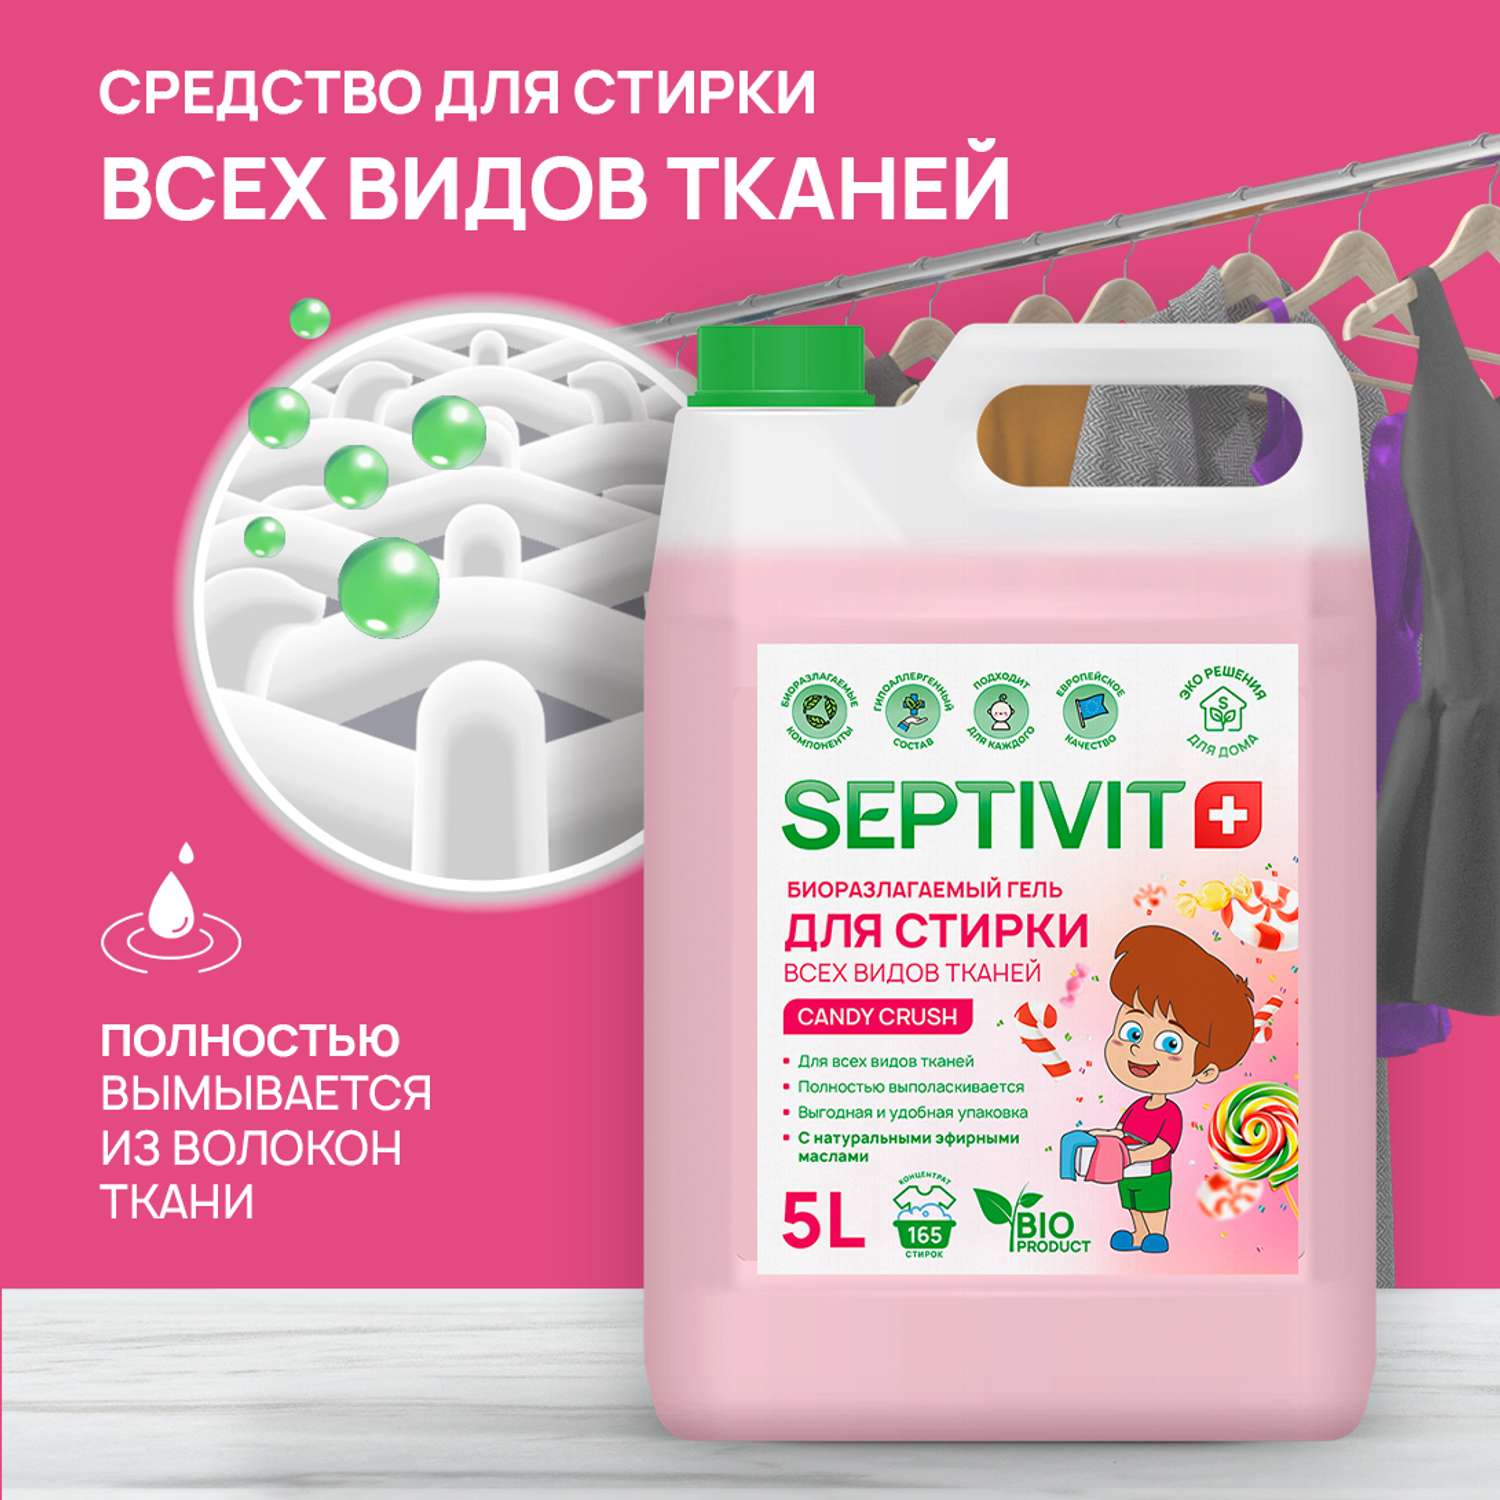 Гель для стирки SEPTIVIT Premium для всех видов тканей с ароматом Candy Crash 5л - фото 2